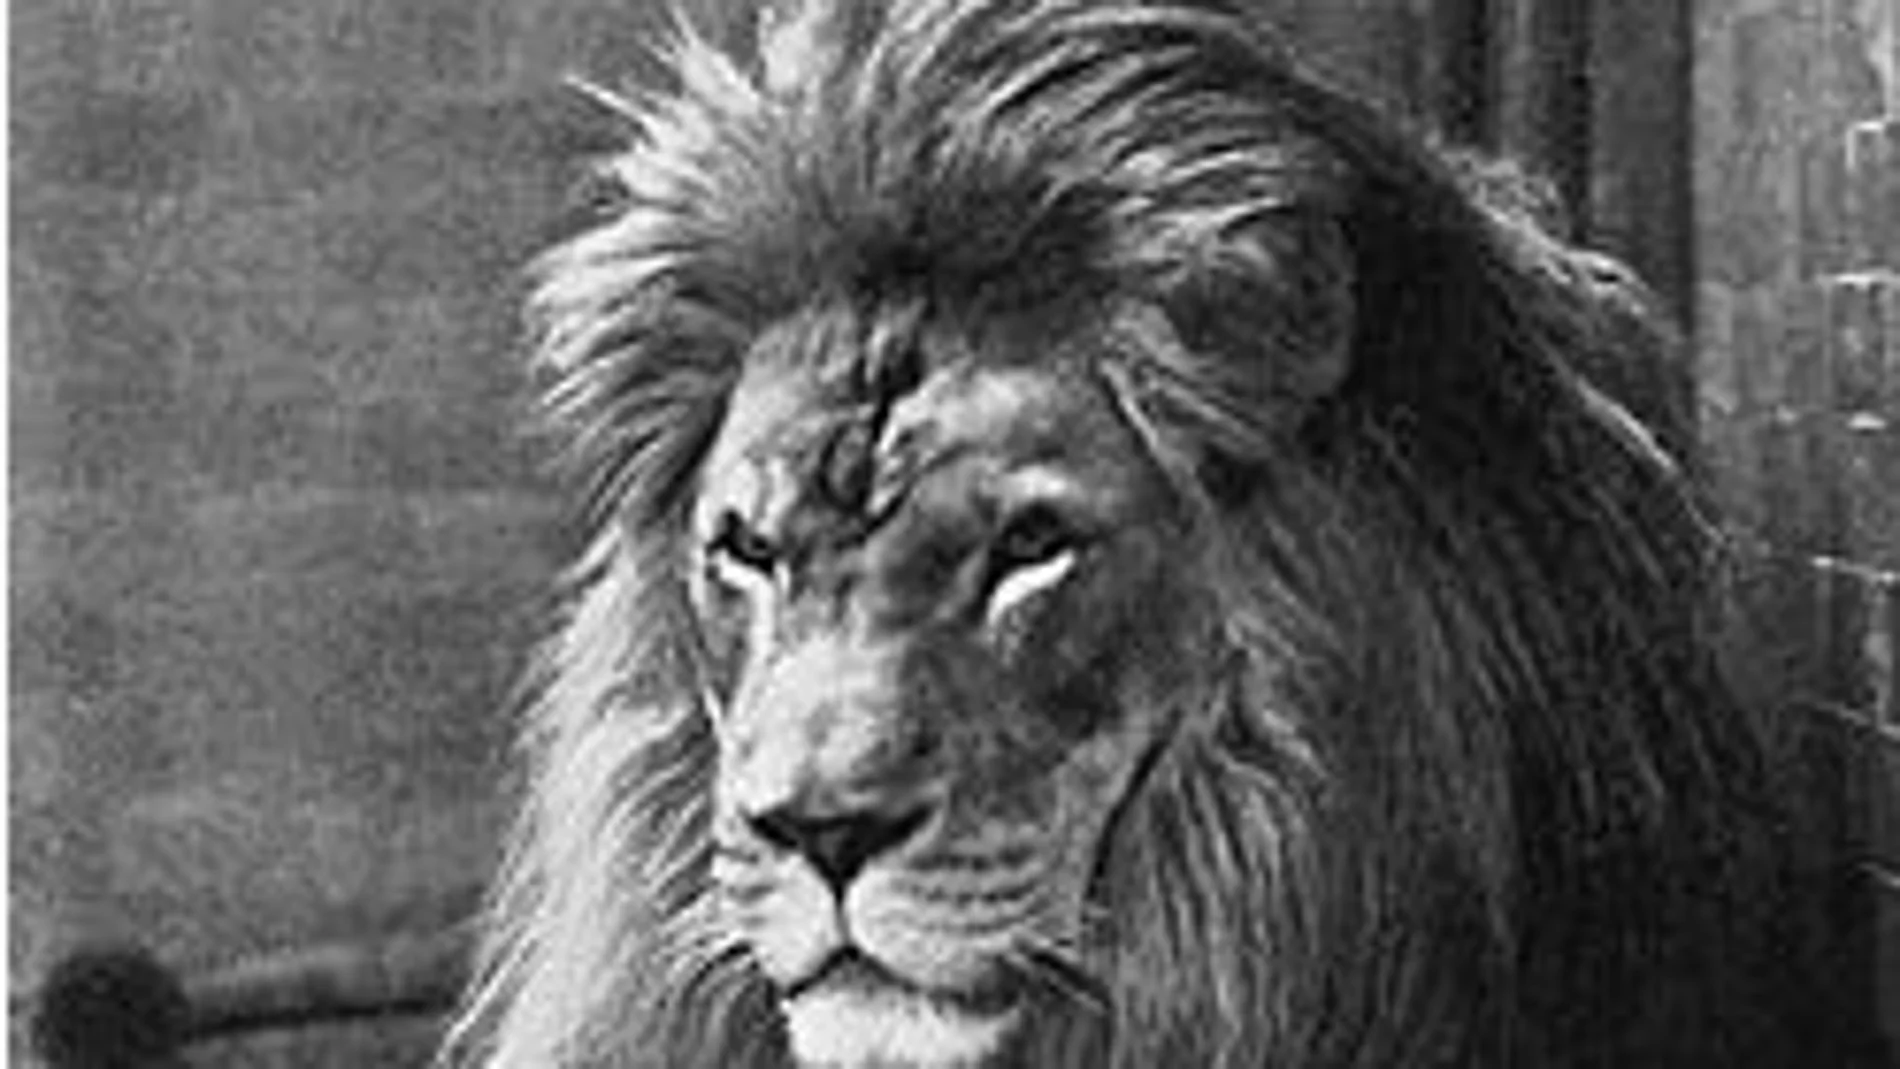 Ejemplar de León del Atlas en el zoo de Nueva York, en 1897